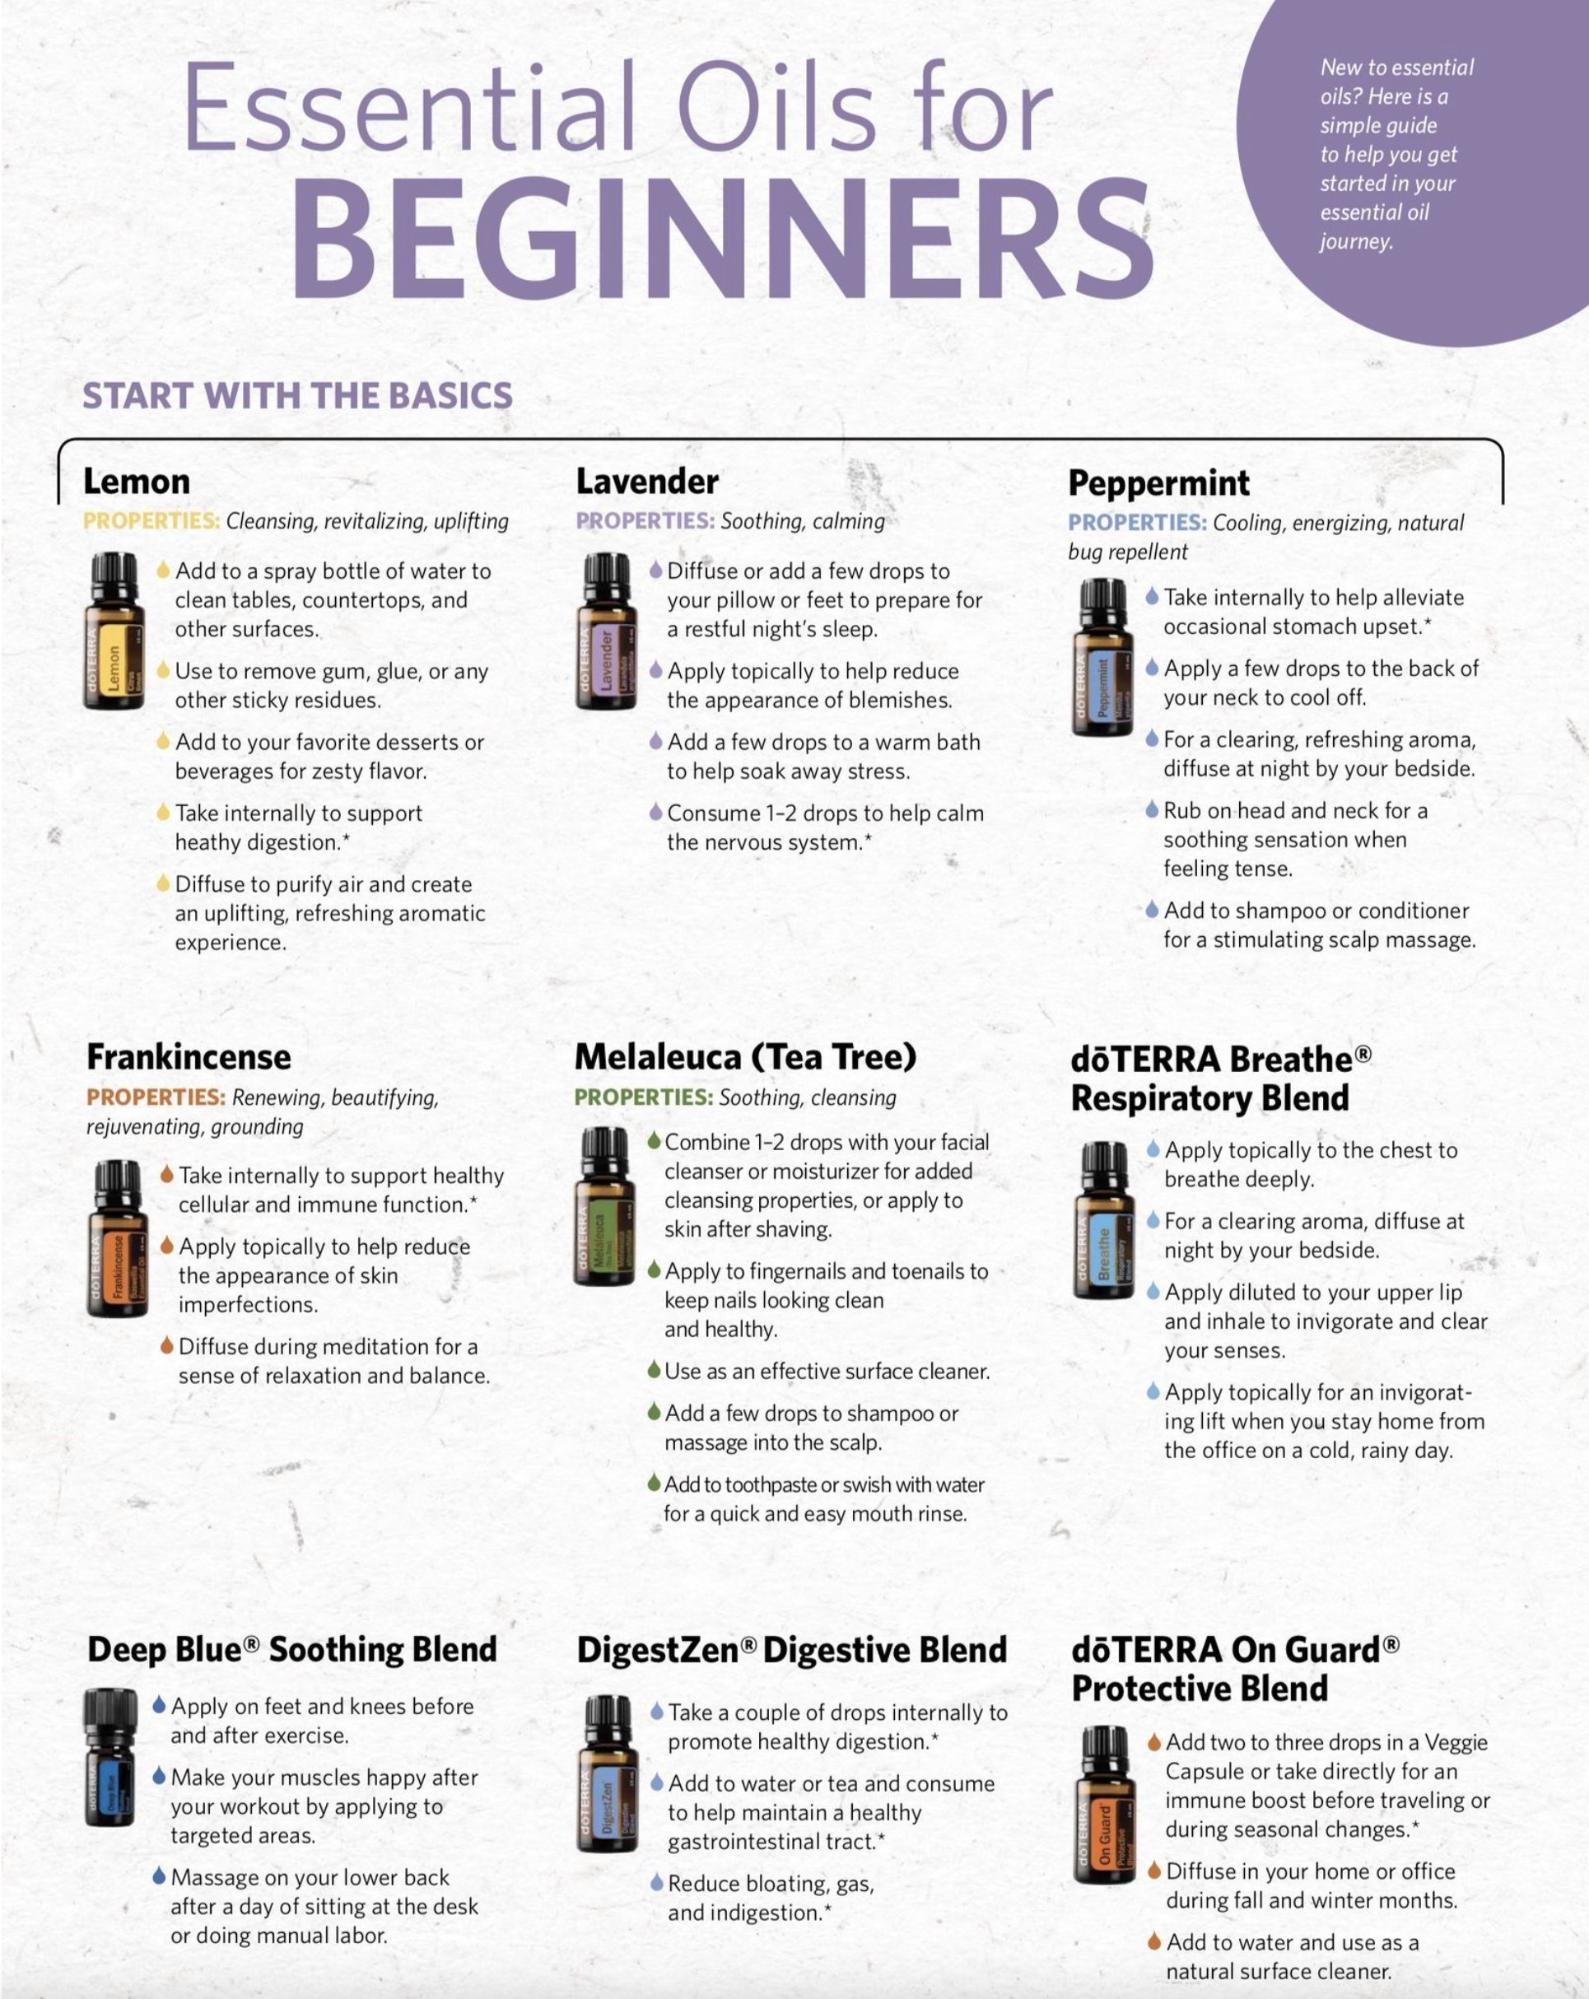 DoTERRA basics oils guide